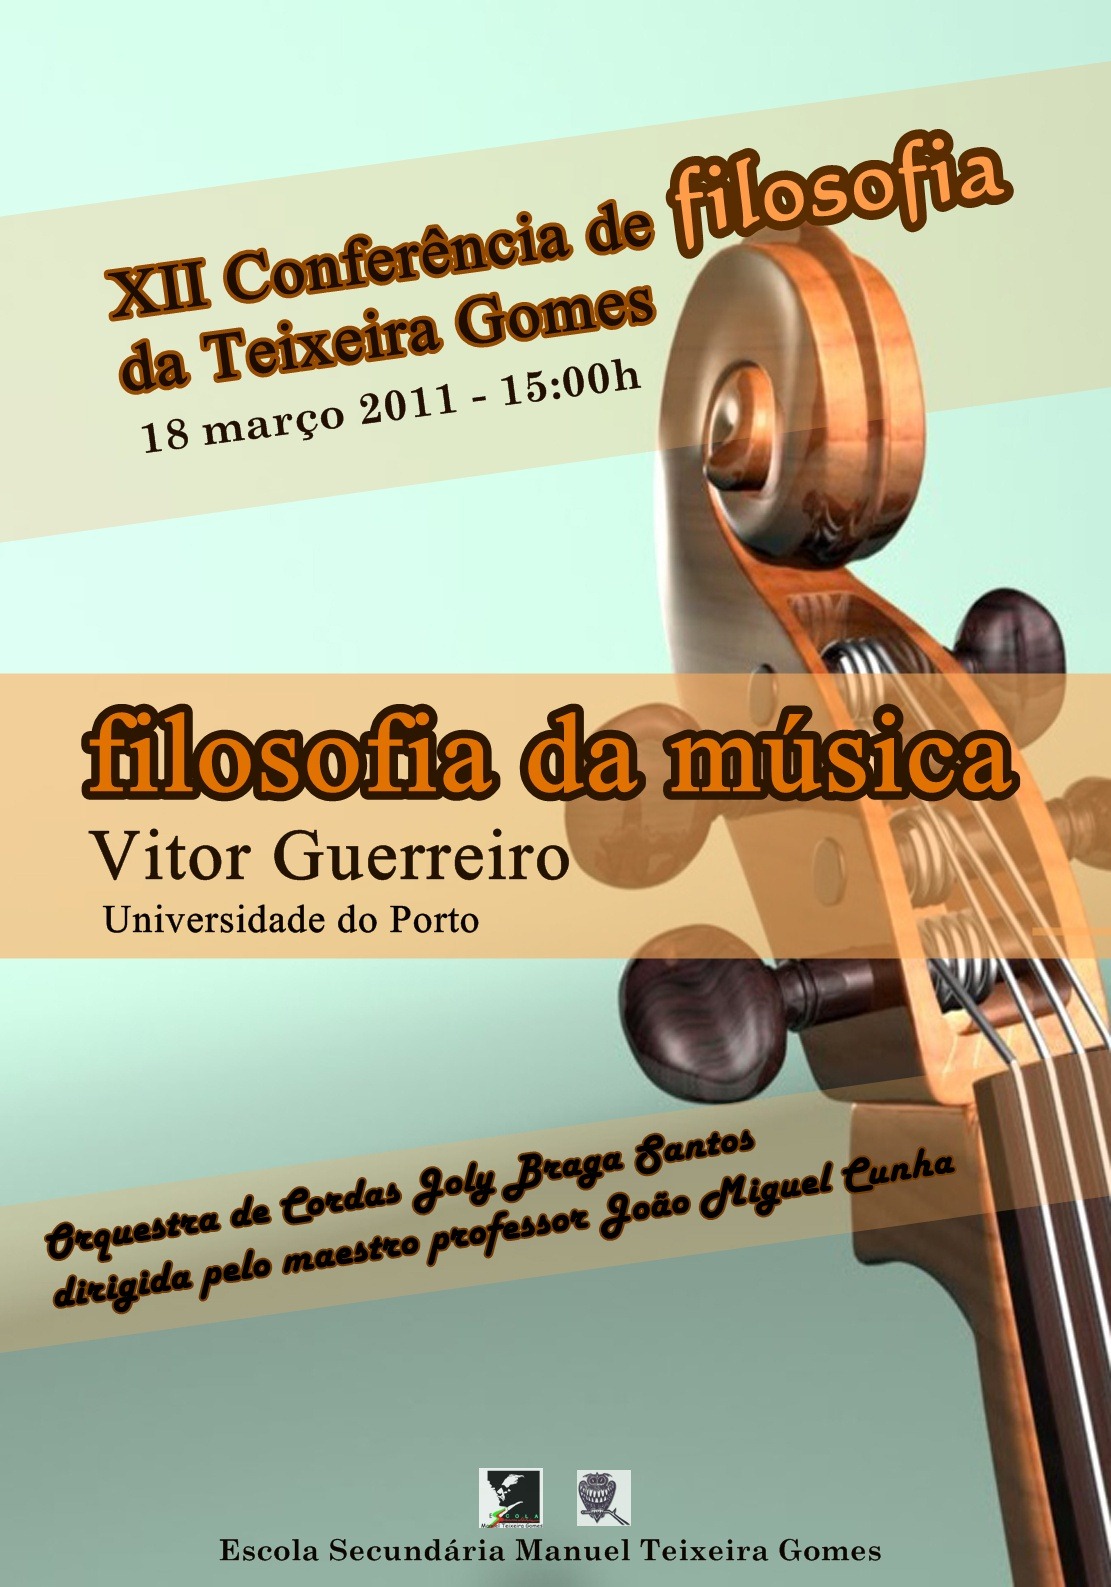 [cartaz XII Conferência de Filosofia da Teixeira Gomes filosofia da música[5].jpg]